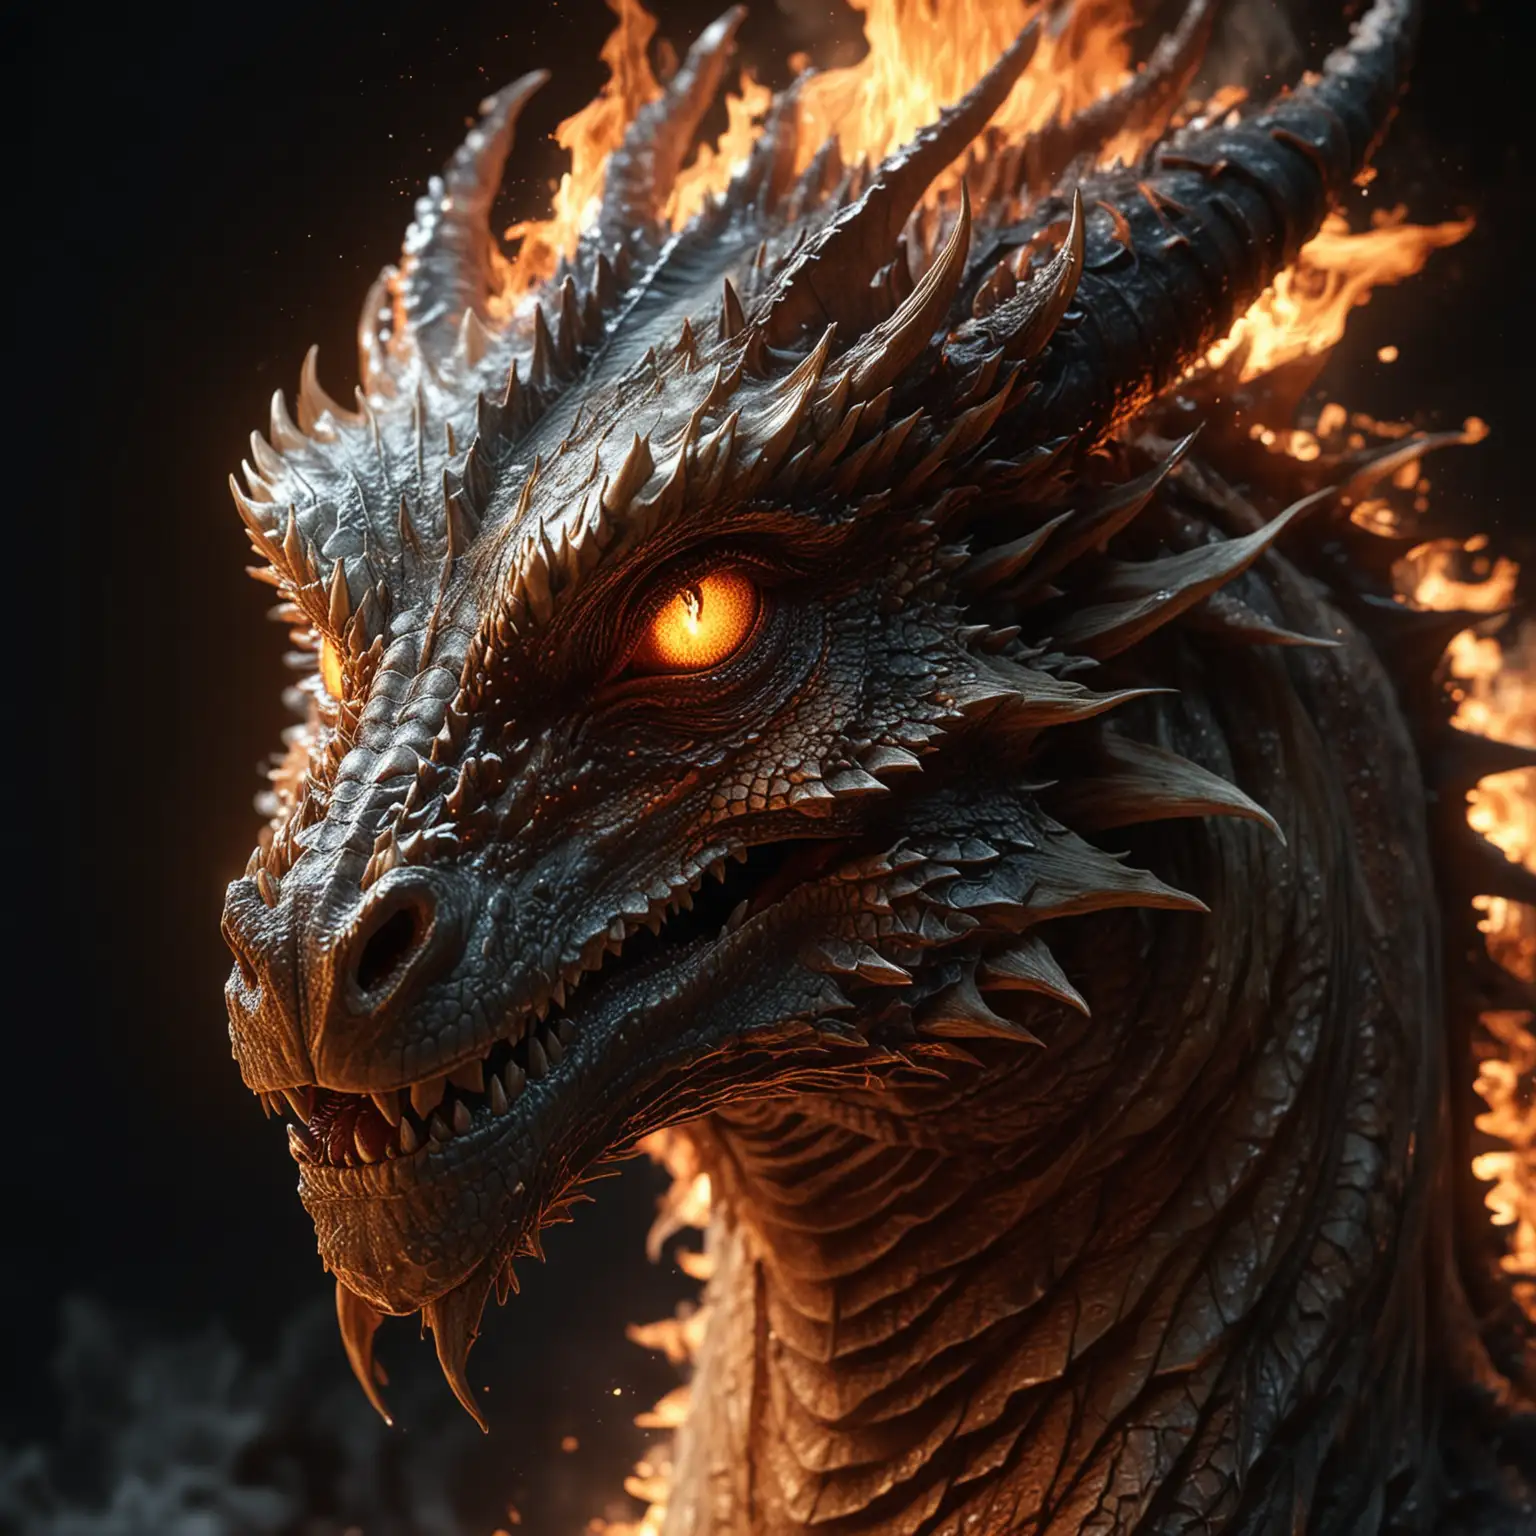 Mesmerizing Hyperrealistic Fire Dragon Portrait in Moonlight